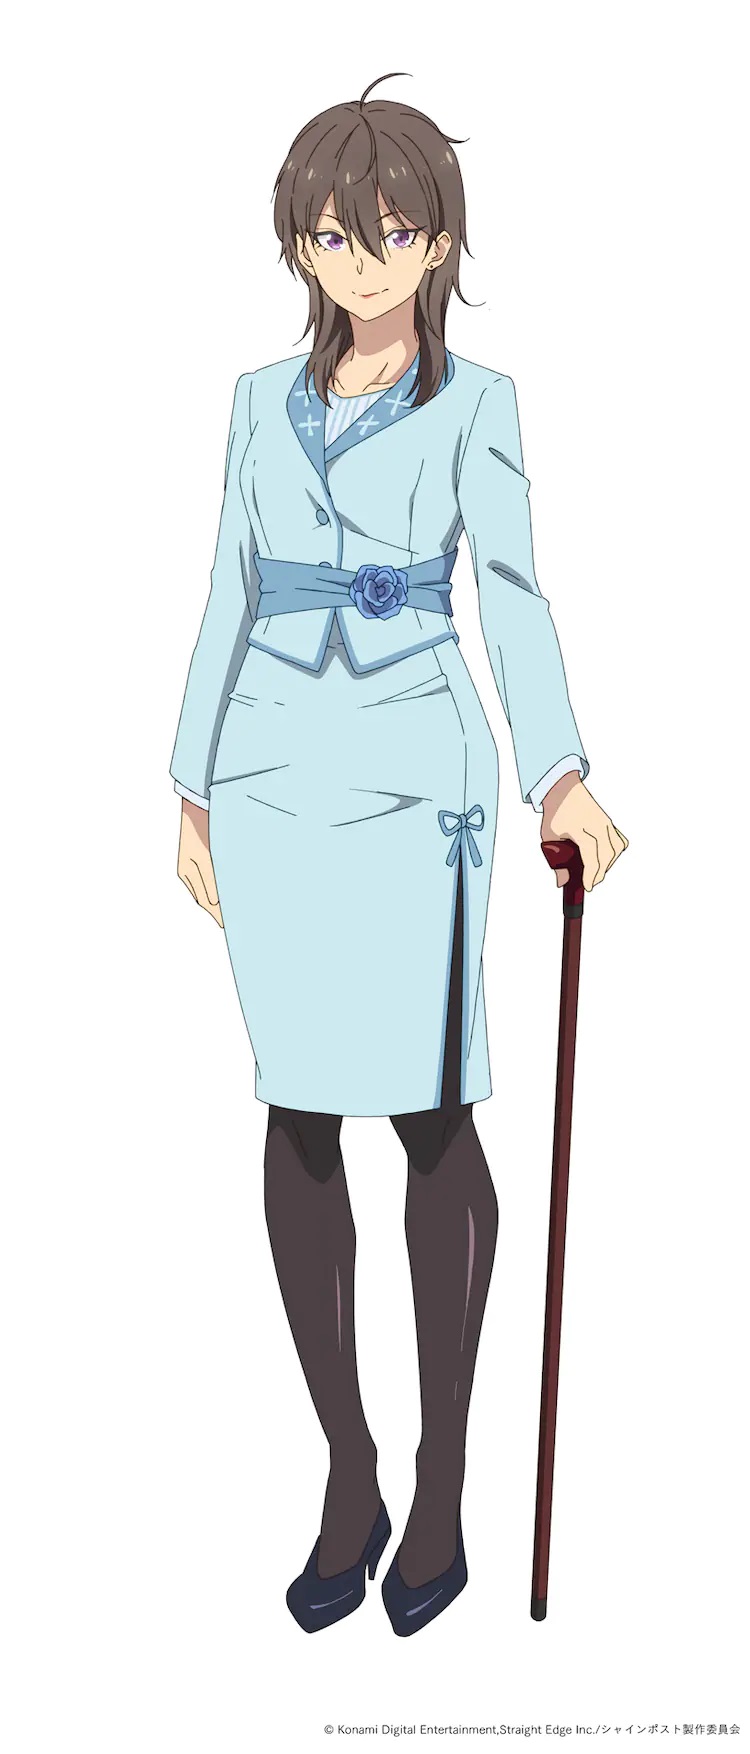 Una imagen del personaje de Yuuki Hinase del próximo anime SHINE POST TV.  Yuuki es una mujer madura de cabello castaño y ojos morados que viste un traje Chanel azul claro, medias y zapatos de tacón alto.  Se sostiene con un bastón en la mano izquierda.